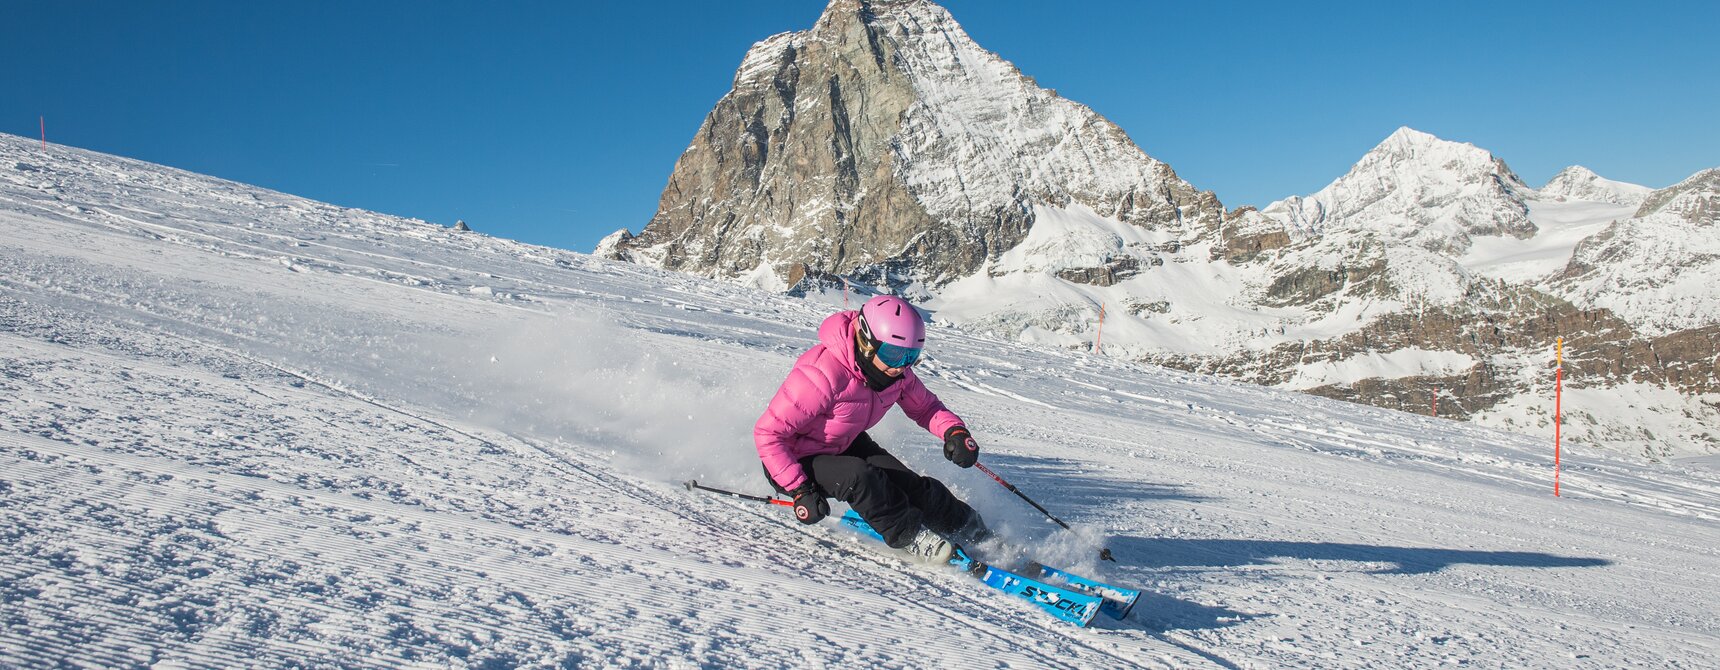 Une femme skie avec le Cervin en arrière-plan | © Michael Portmann